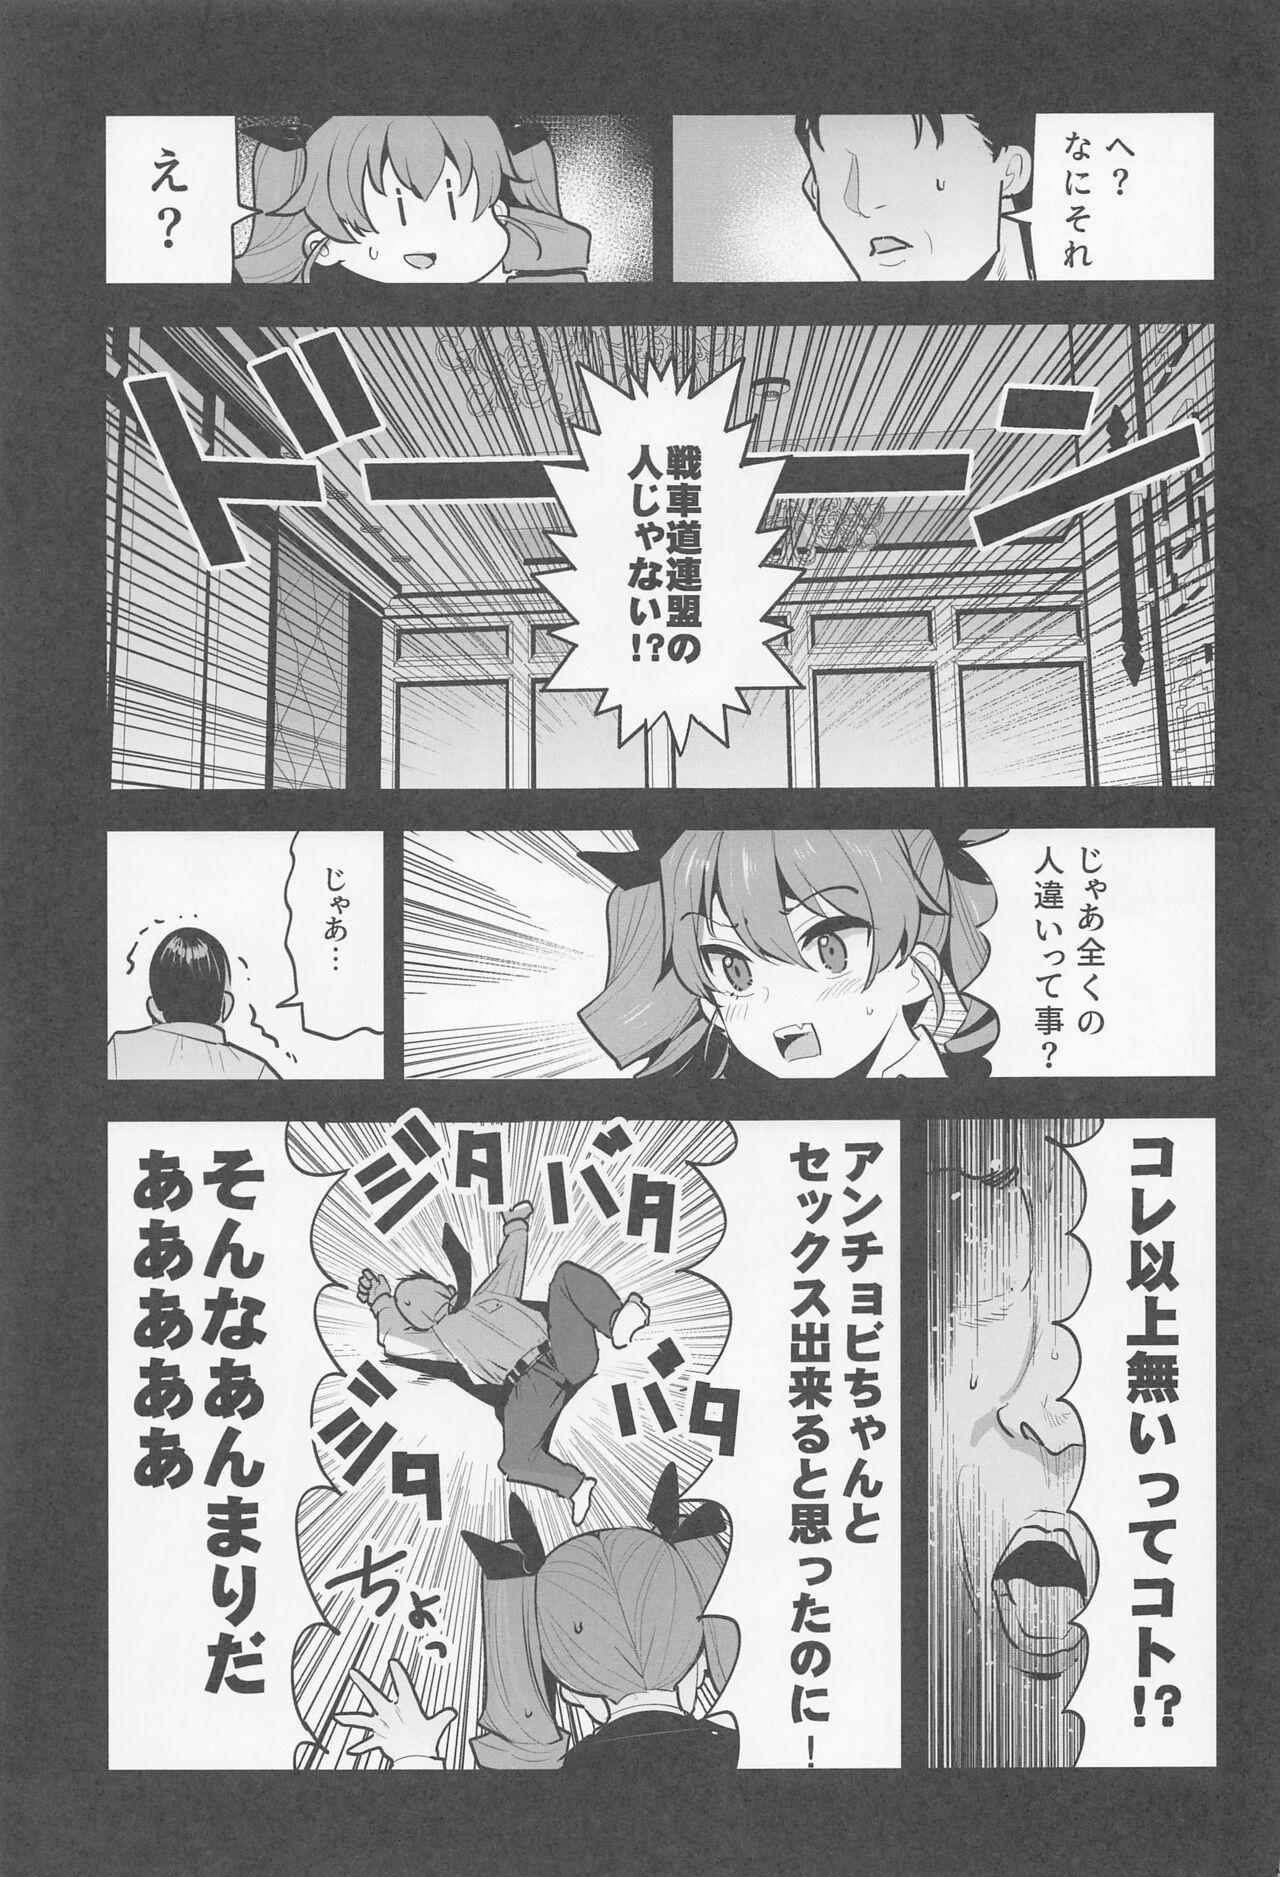 Hand anchobi dogezadeonegaishitaraippatsuyarasetekuremashita - Girls und panzer Free Fuck - Page 10